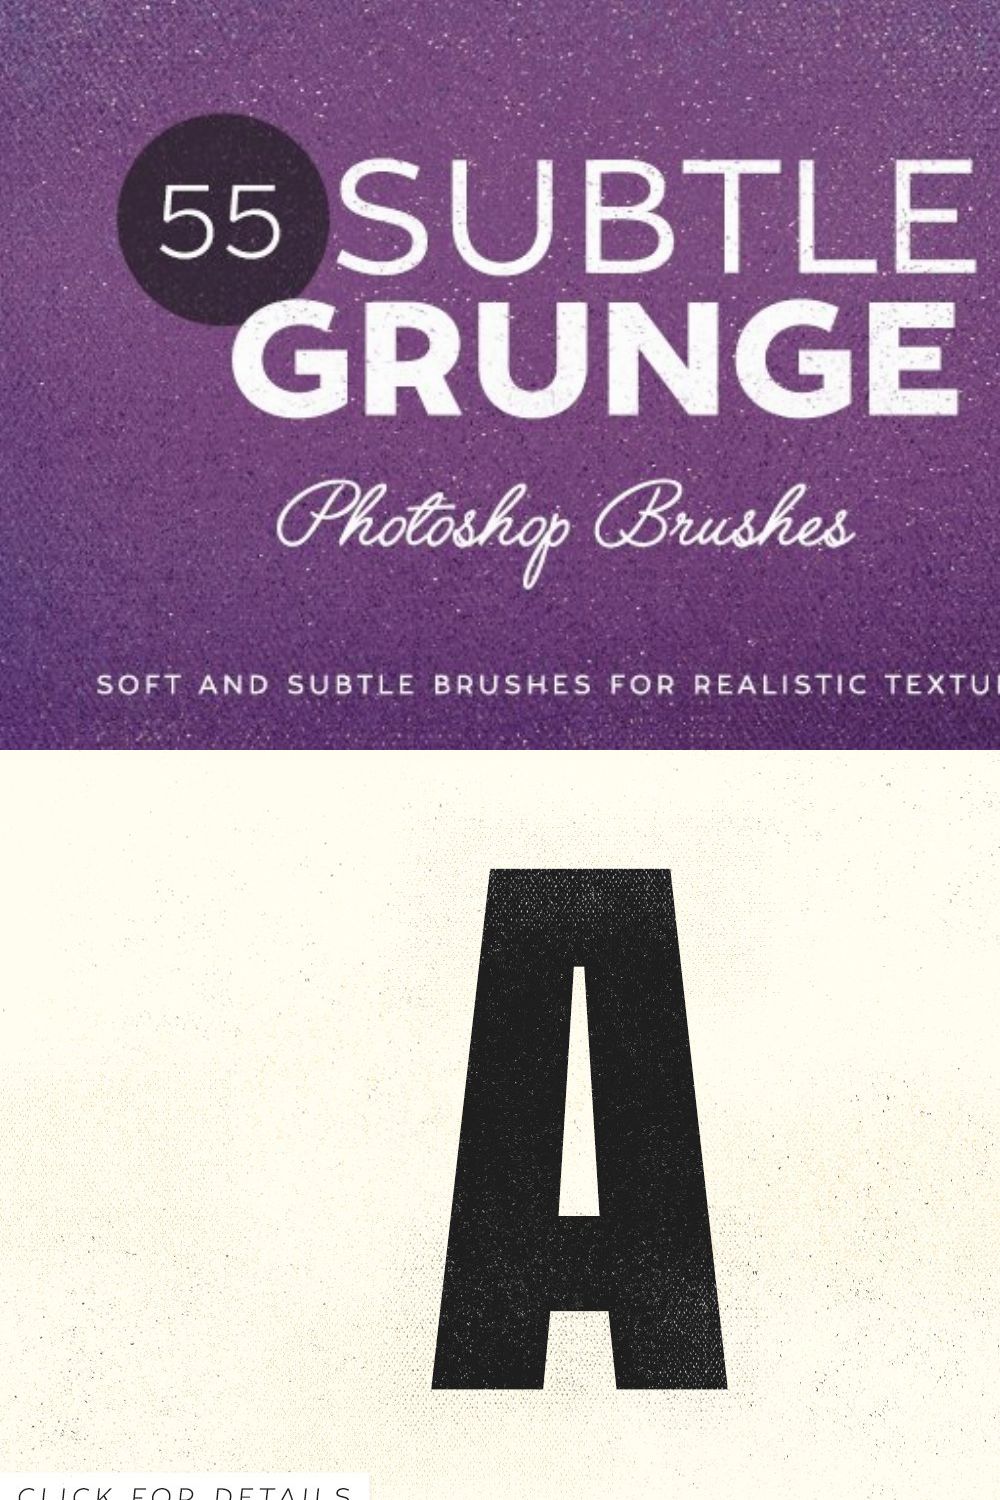 55 Subtle Grunge Brushes pinterest preview image.